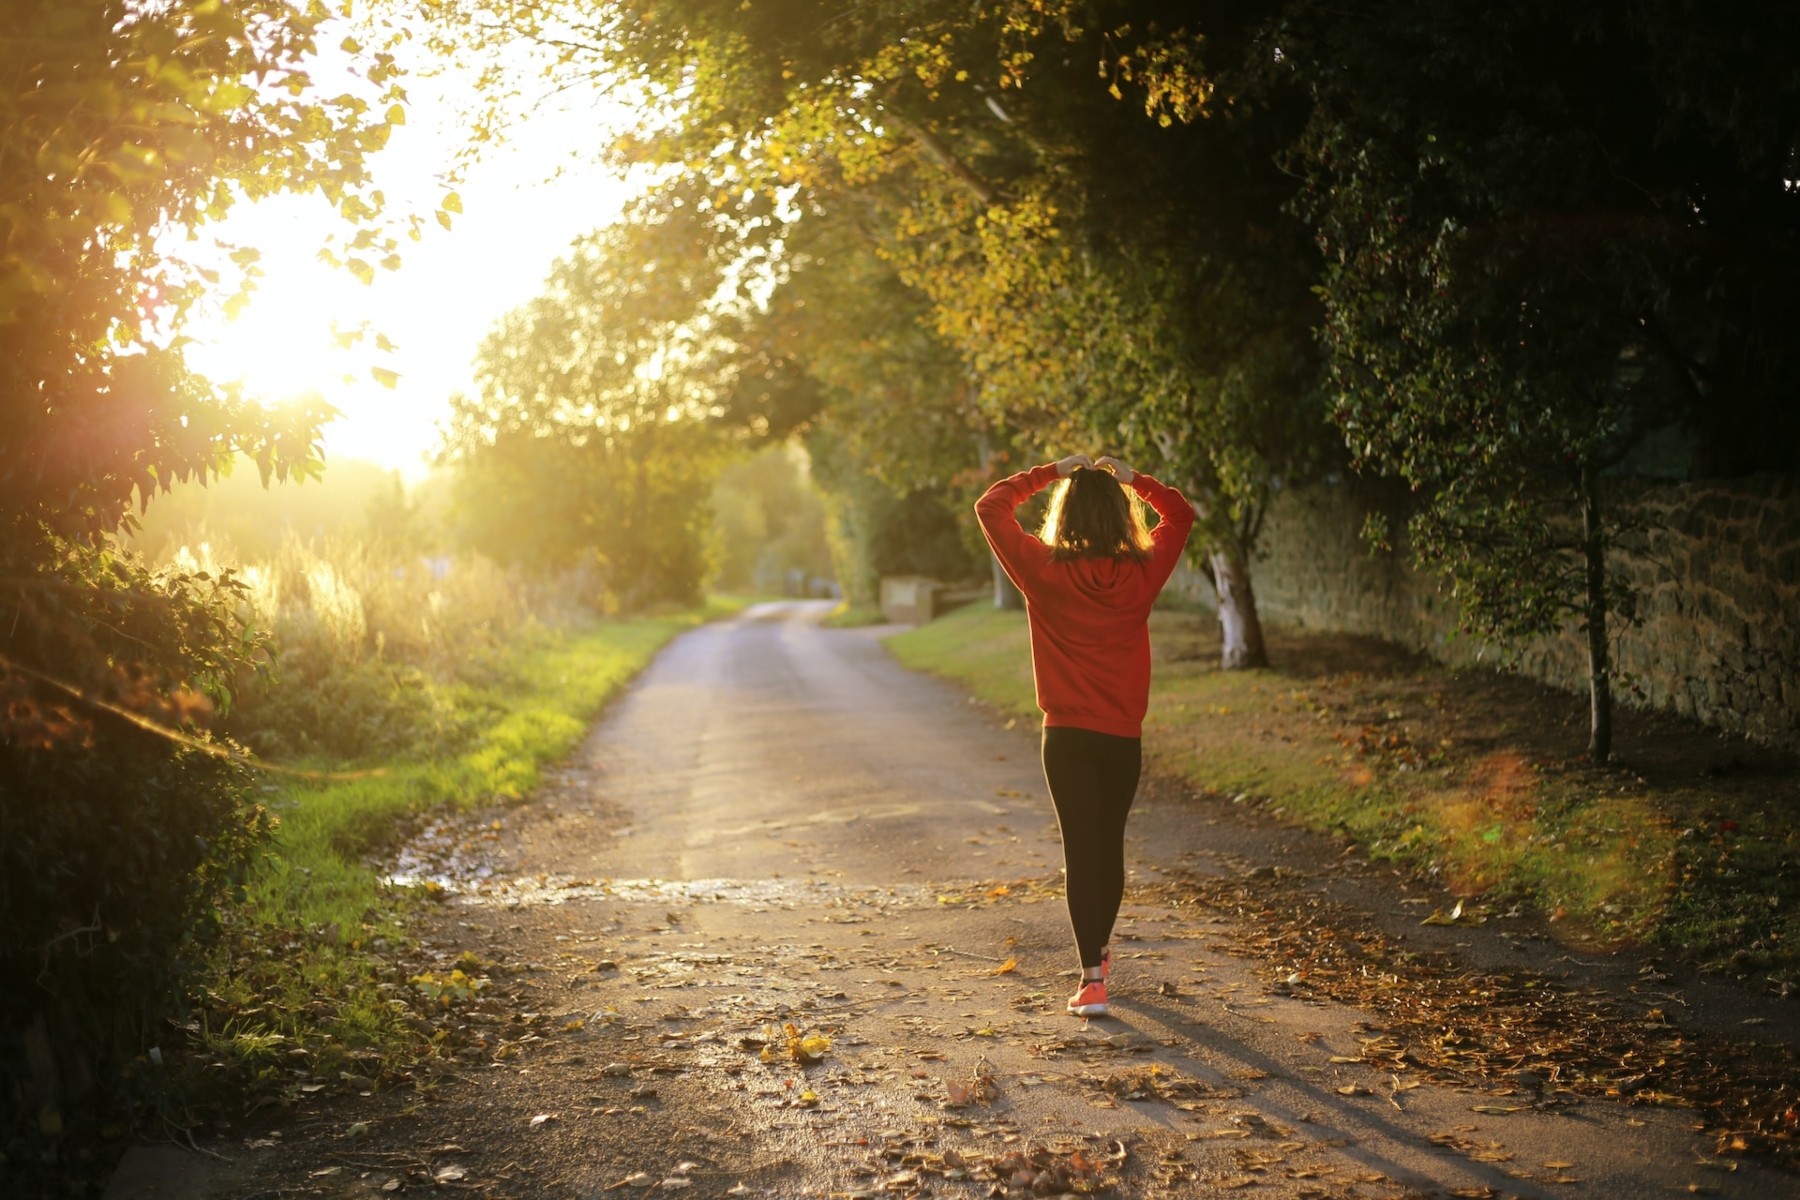 Τρέξιμο αρθρίτιδα: Τι πρέπει και τι δεν πρέπει να κάνετε για να διαχειριστείτε τον πόνο;